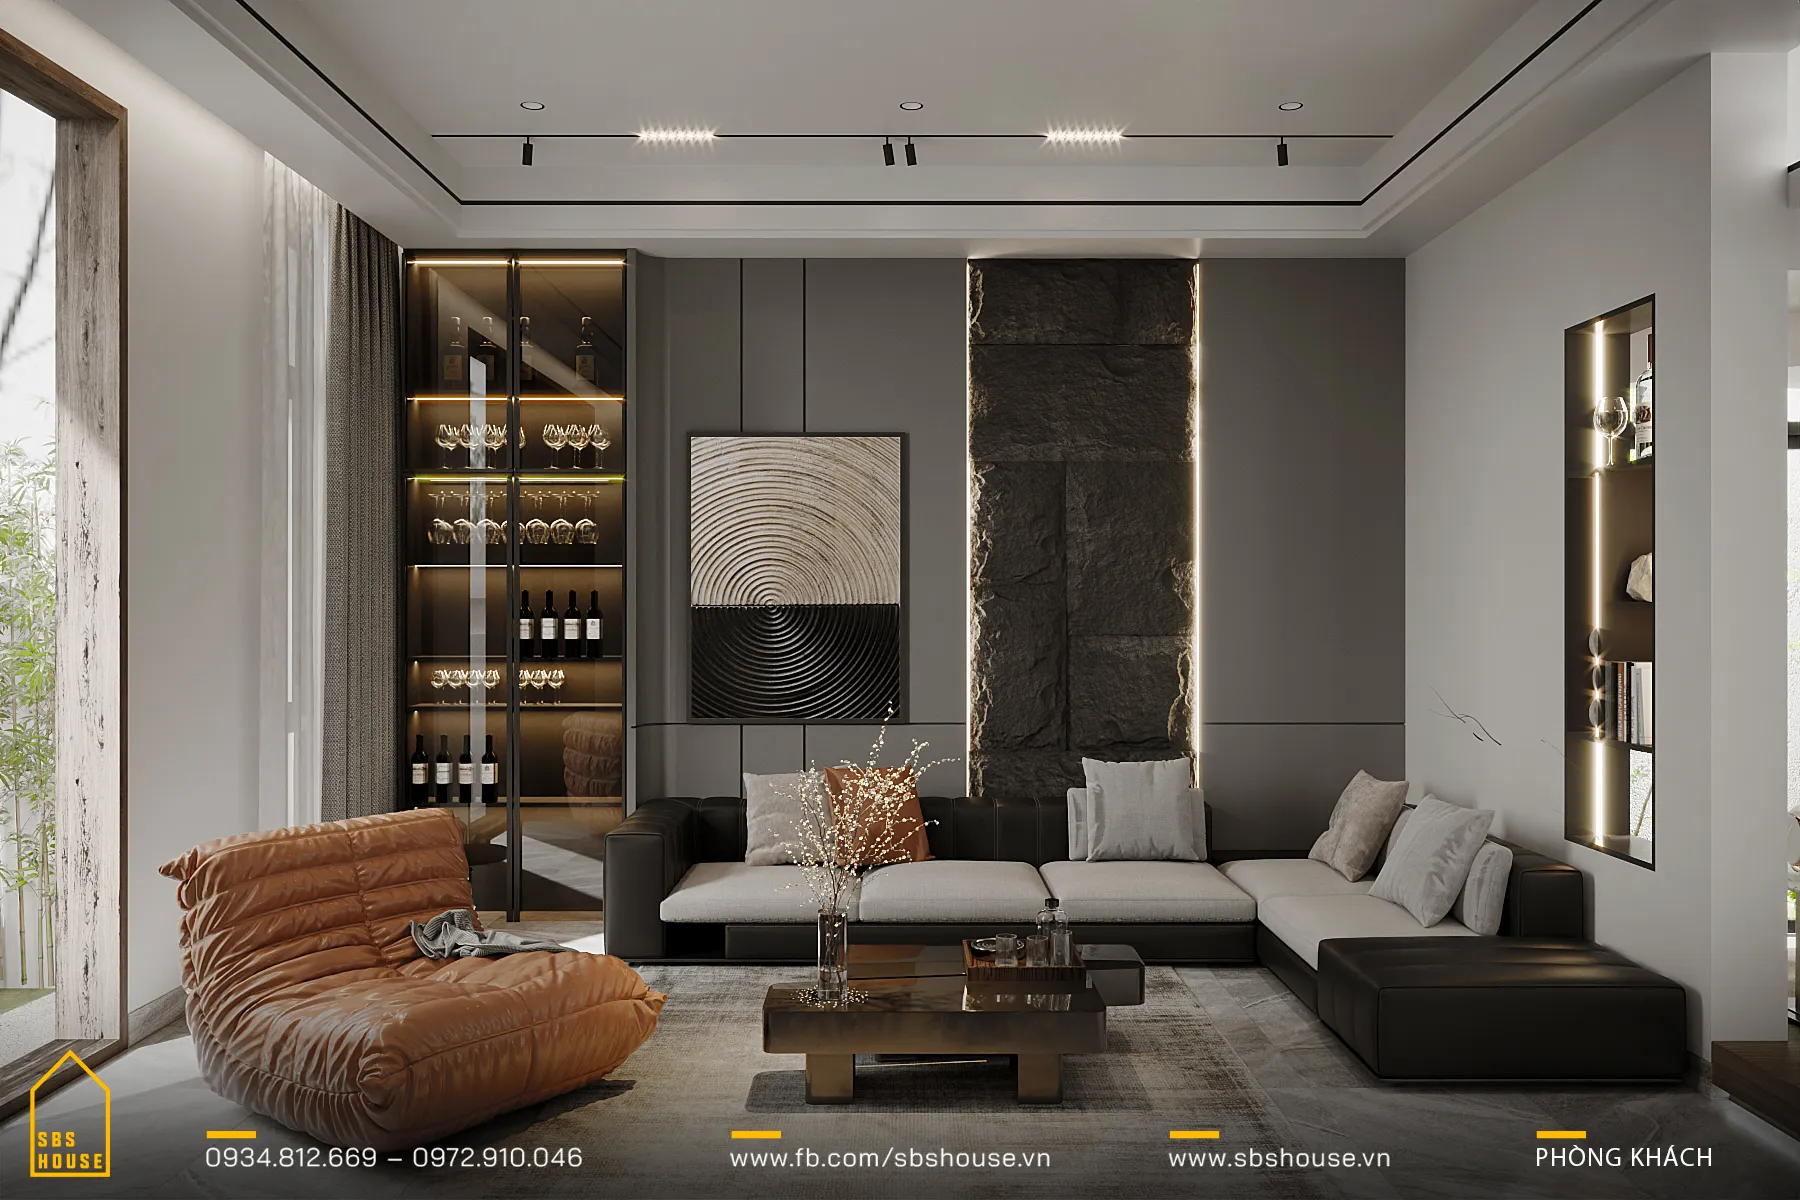 Không gian phòng khách rộng rãi với tone màu trung tính cùng nội thất hiện đại mang đến cảm giác thoải mái và sang trọng. 